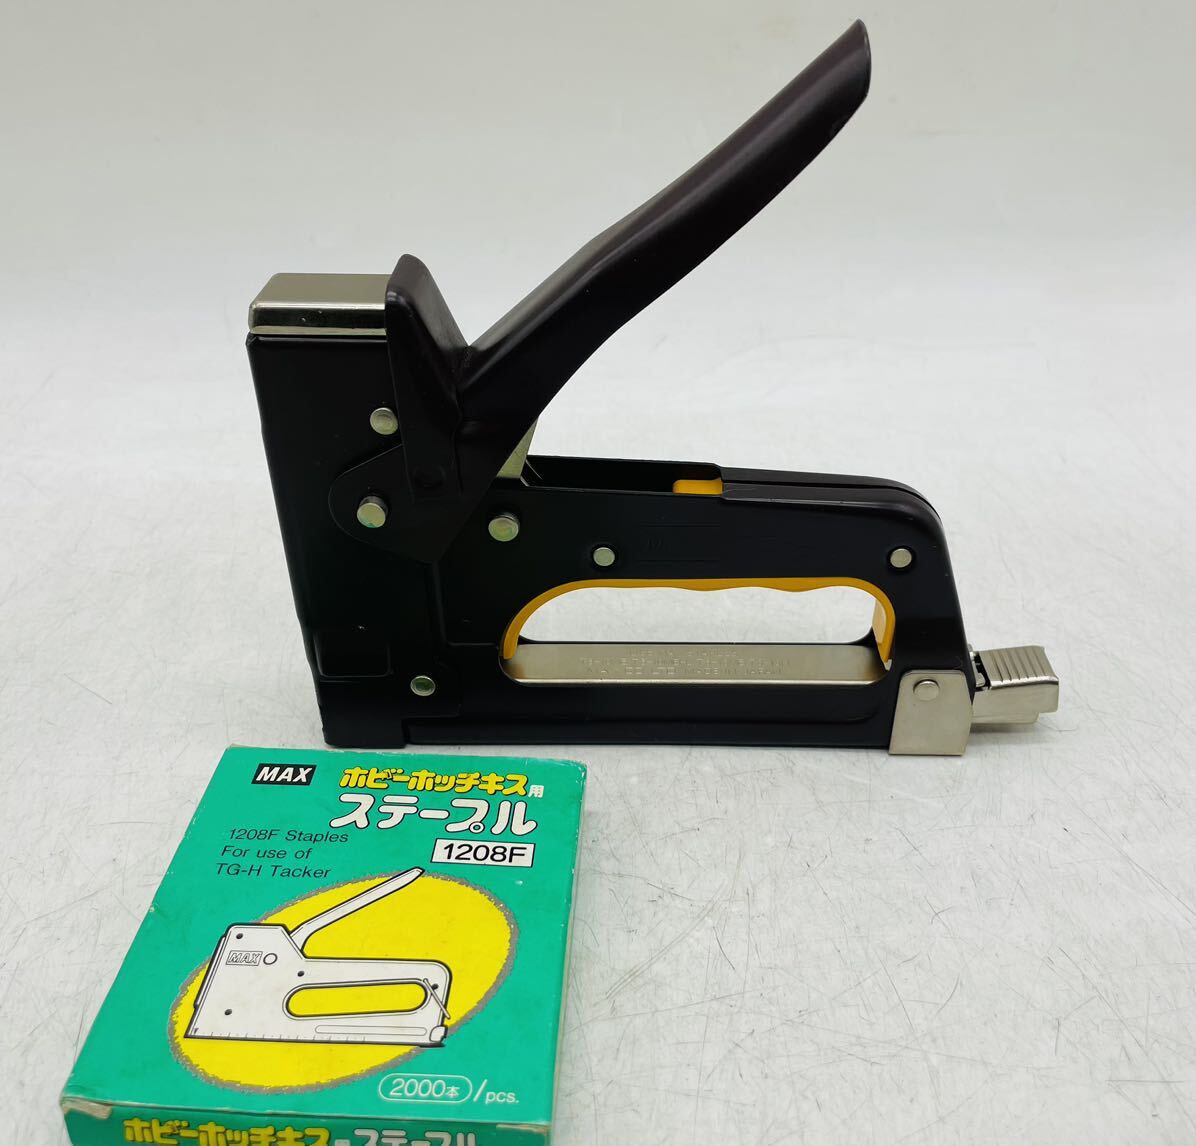 [ б/у ] Max MAX gun takaTG-A уголь желтый инструмент DIY текущее состояние товар DM0430M